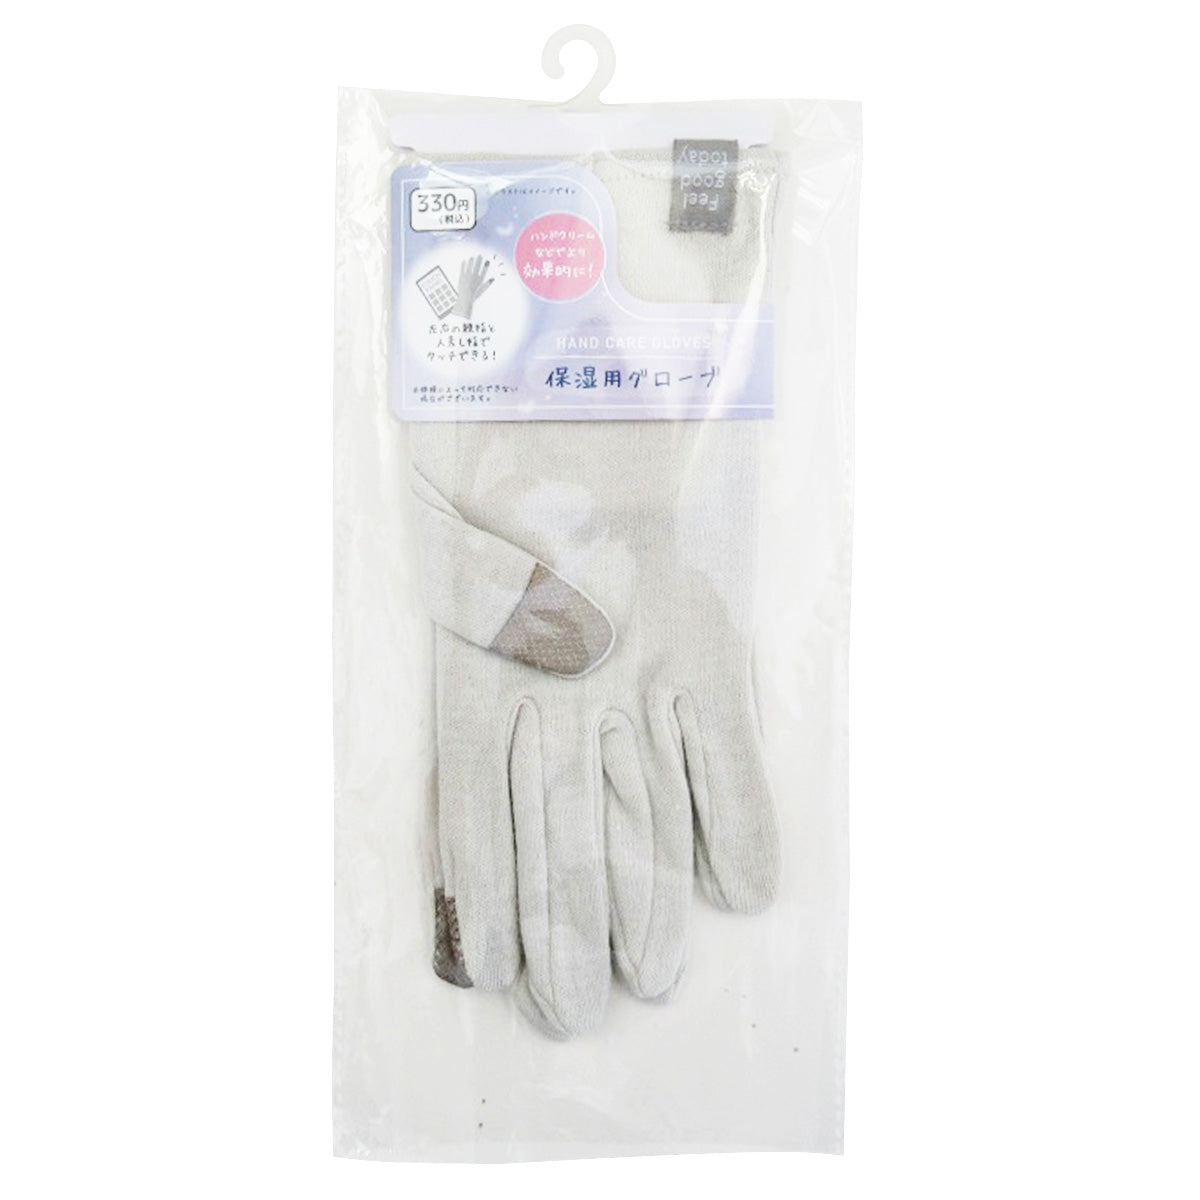 保湿用グローブ 手袋 乾燥対策 グレー 9001/359656